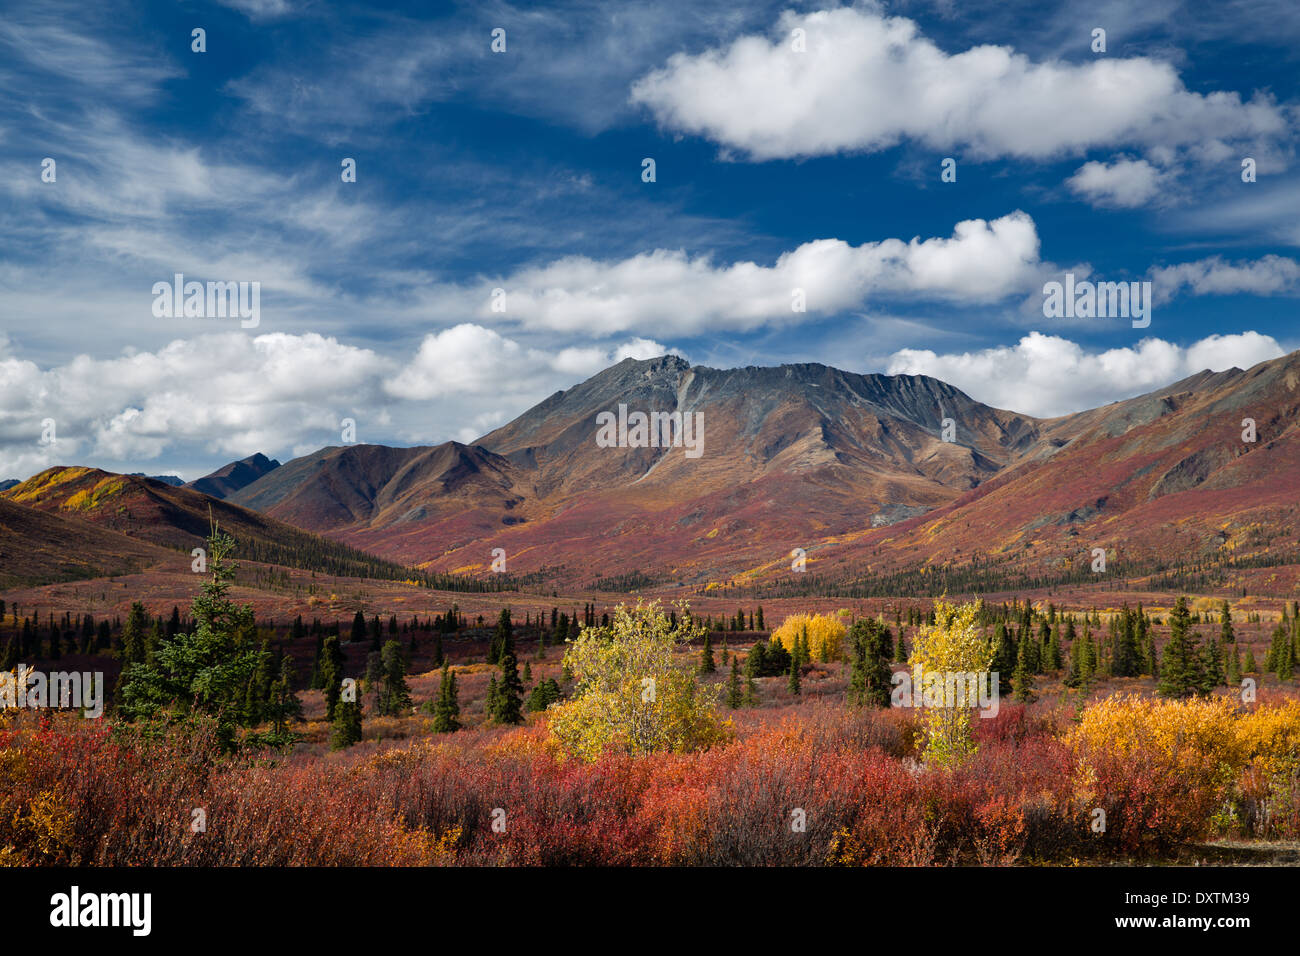 Los colores de otoño y la Catedral de la montaña, Parque Territorial de desecho, los Territorios del Yukón, Canadá Foto de stock